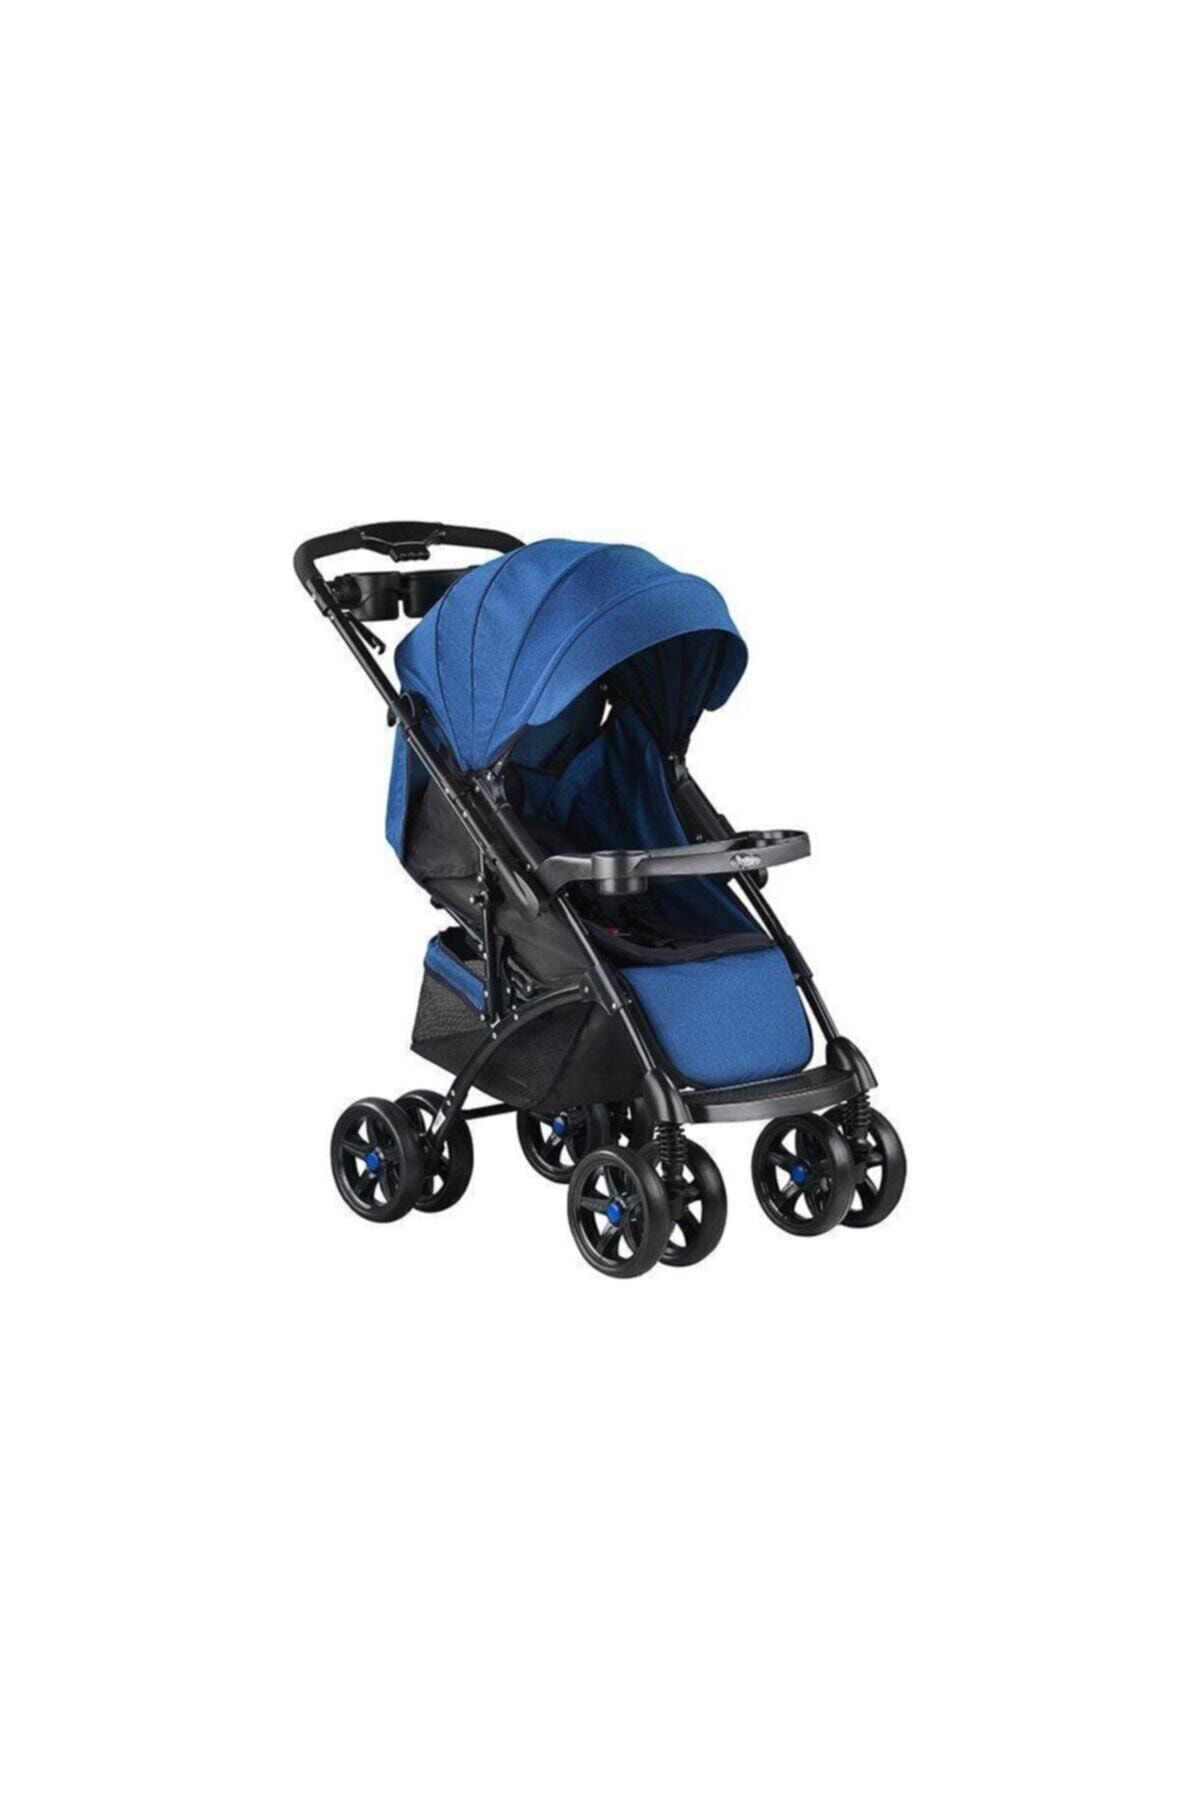 Babyhope Bh-609 Polo Çift Yönlü Bebek Arabası - Mavi